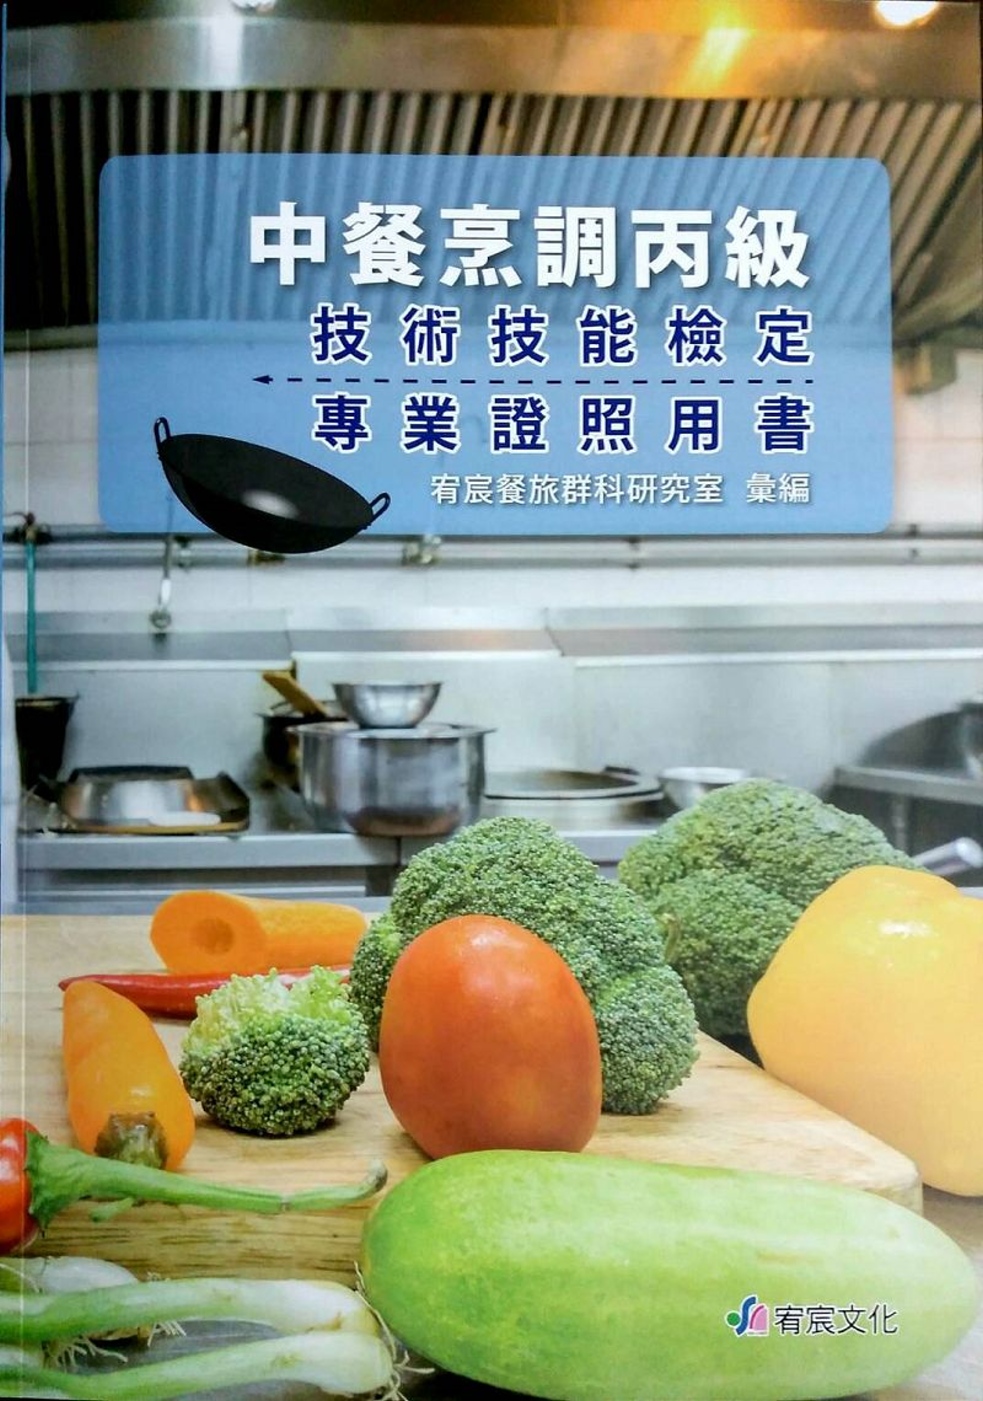 中餐烹調丙級技術技能檢定專業證照用書